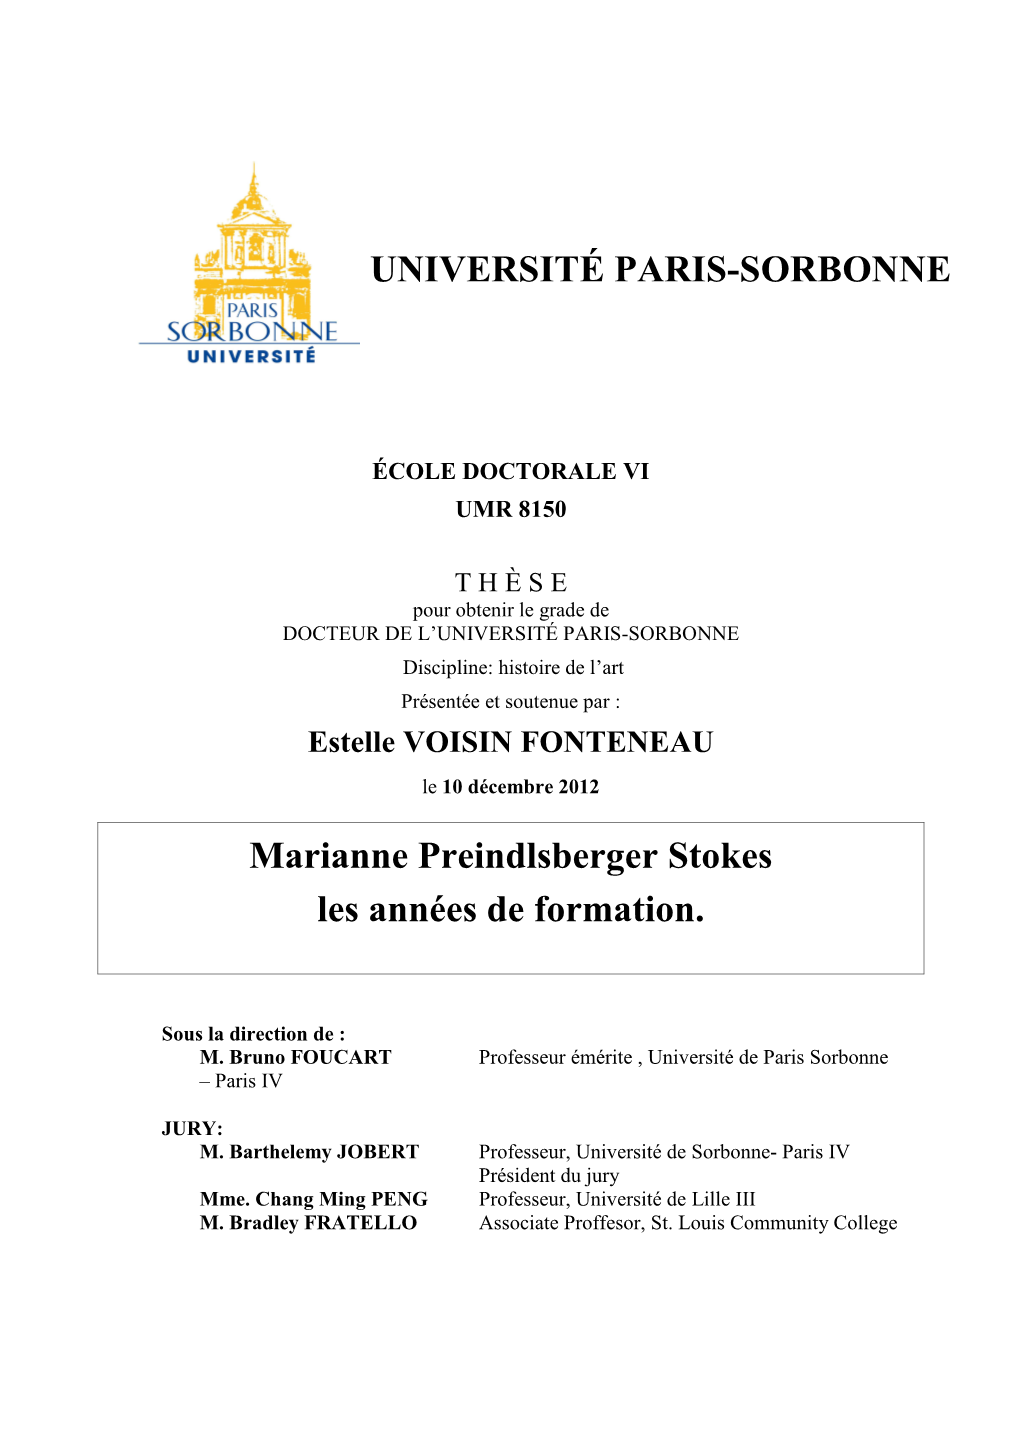 UNIVERSITÉ PARIS-SORBONNE Marianne Preindlsberger Stokes Les